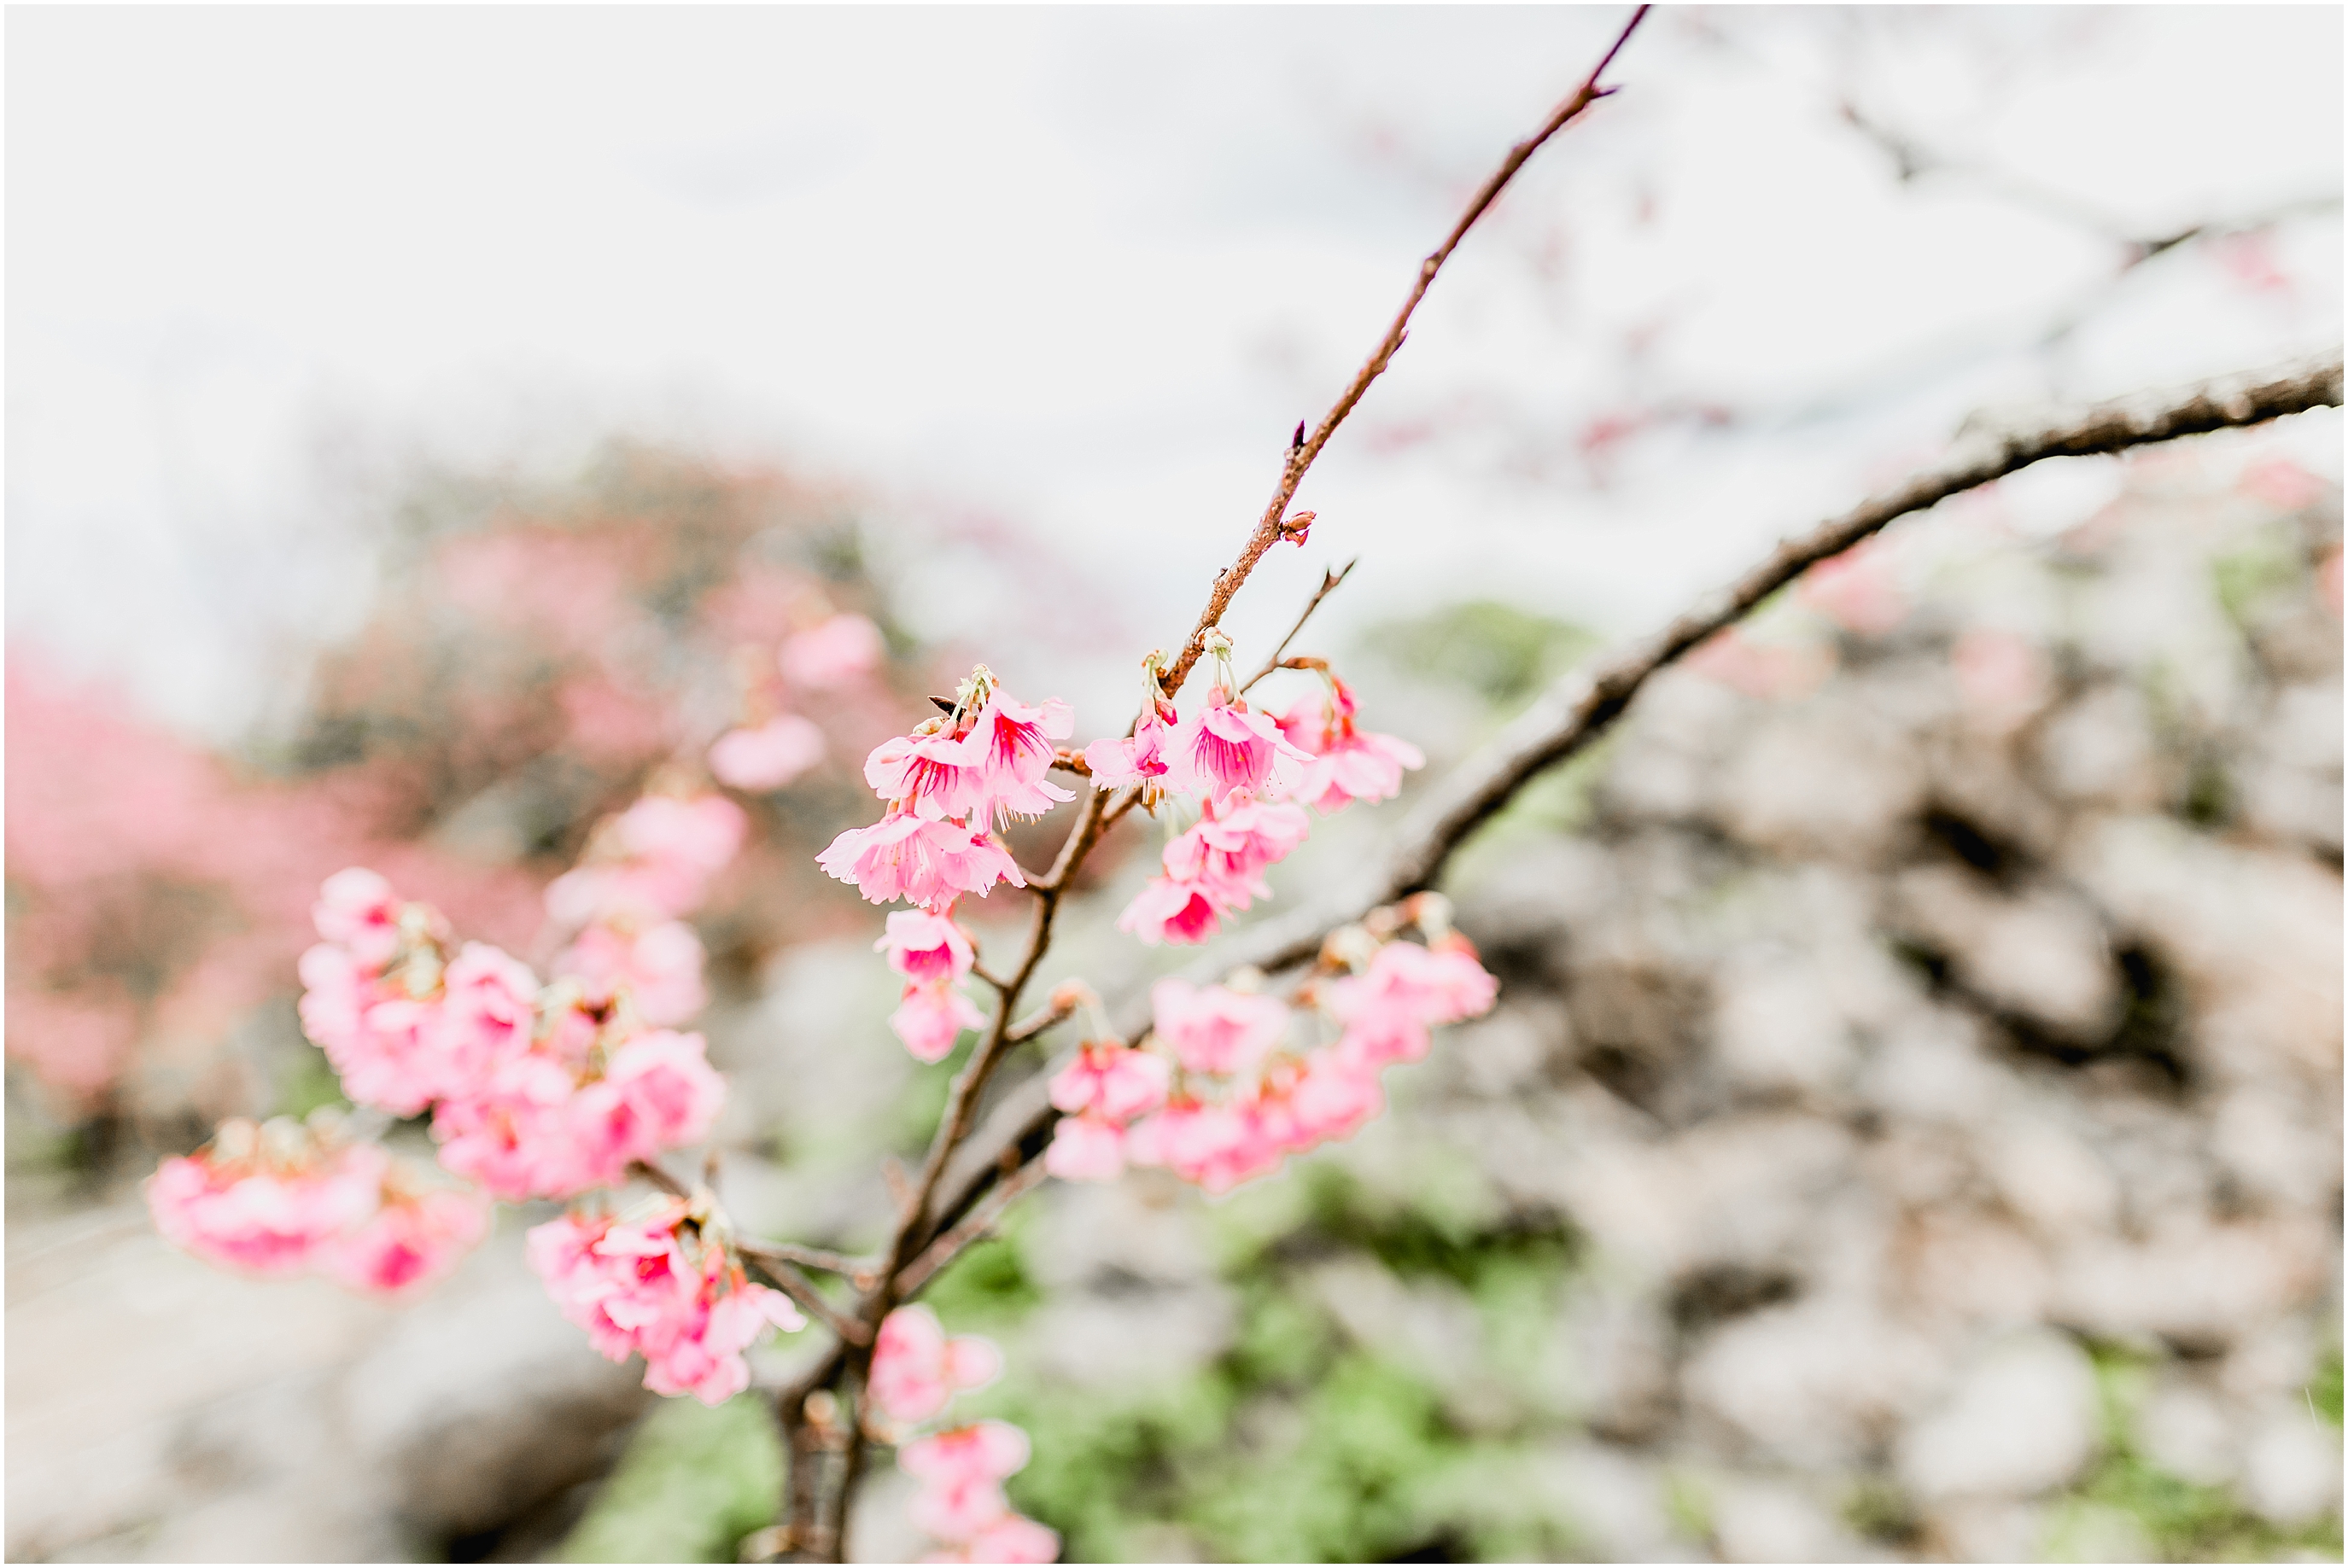 Okinawa cherry blossoms, Okinawa photographer 